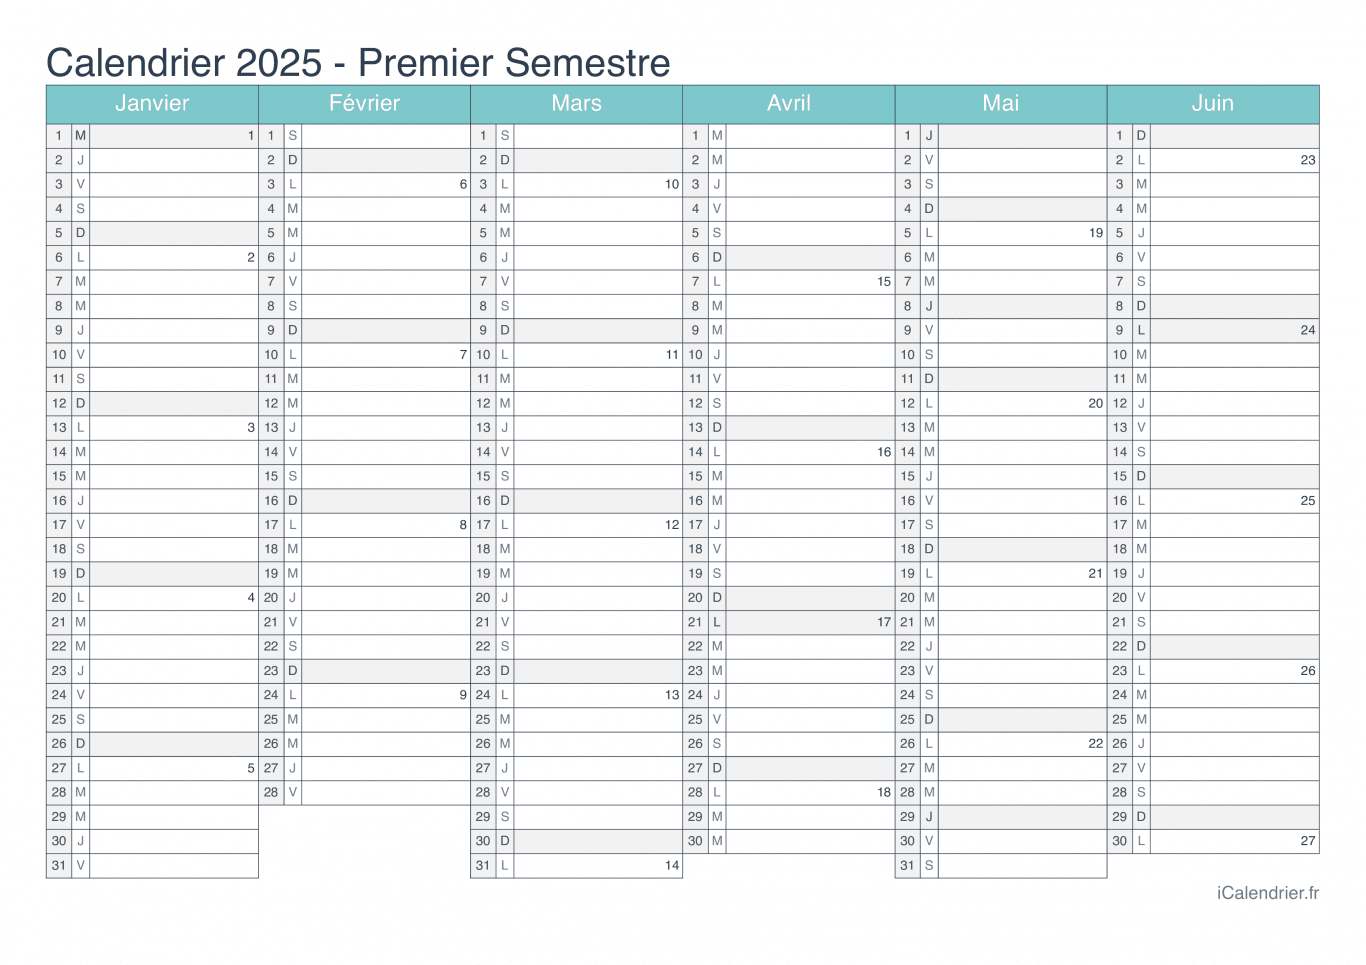 Calendrier par semestre avec numéros des semaines 2025 - Turquoise